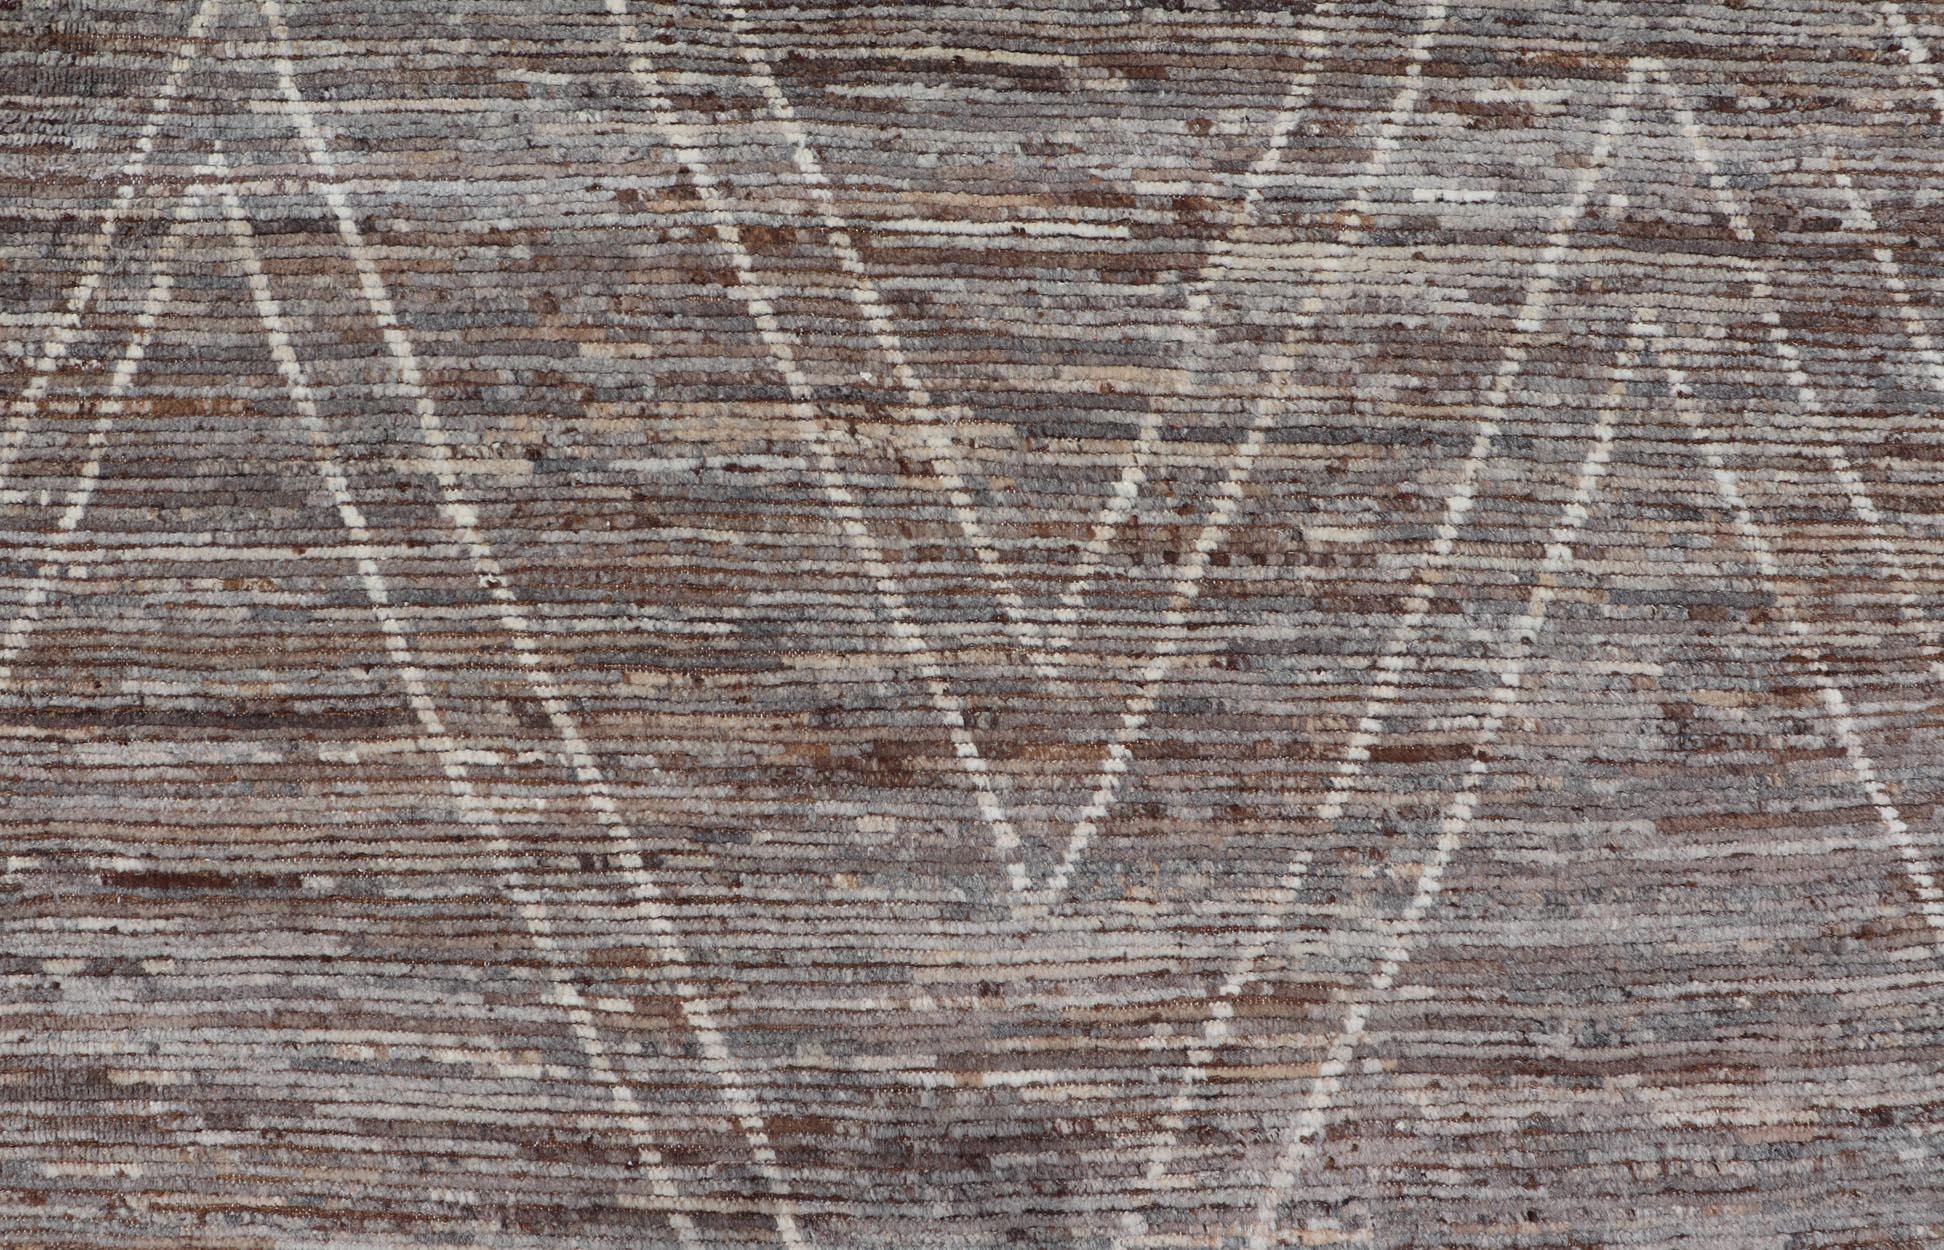 Großer moderner Teppich im marokkanischen Stil mit Rautenmuster in erdigen Tönen. Keivan Woven Arts; Teppich SNK-1880, Herkunftsland / Art: Afghanistan / Modern Casual, etwa Anfang des 21. Jahrhunderts.
Maße: 10'5 x 14'0 
Dieser moderne, lässige